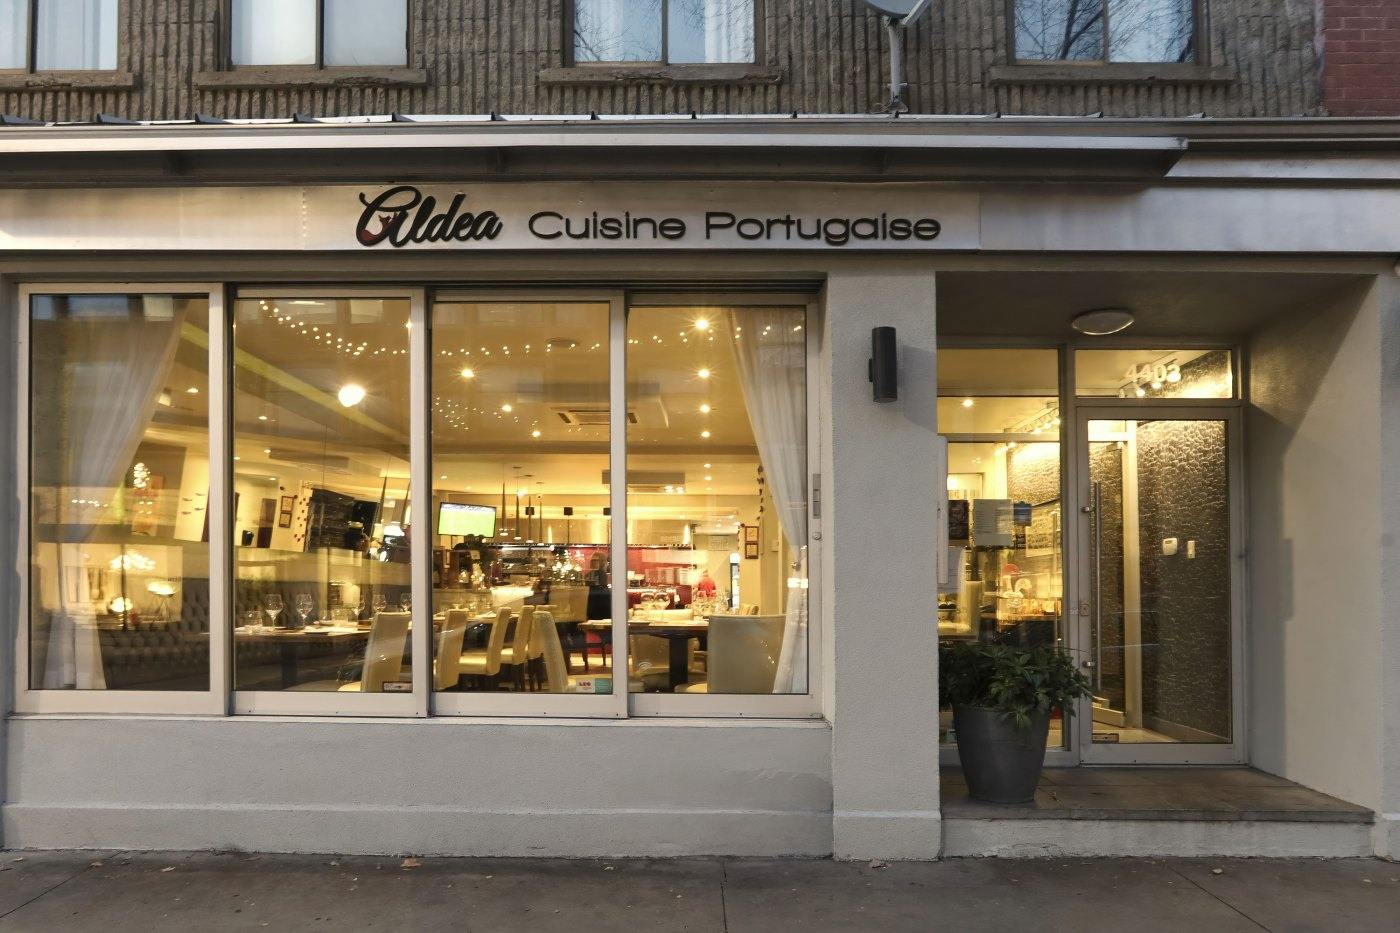 Aldea, Le Plateau-Mont-Royal, Montreal - Portuguese Cuisine Restaurant